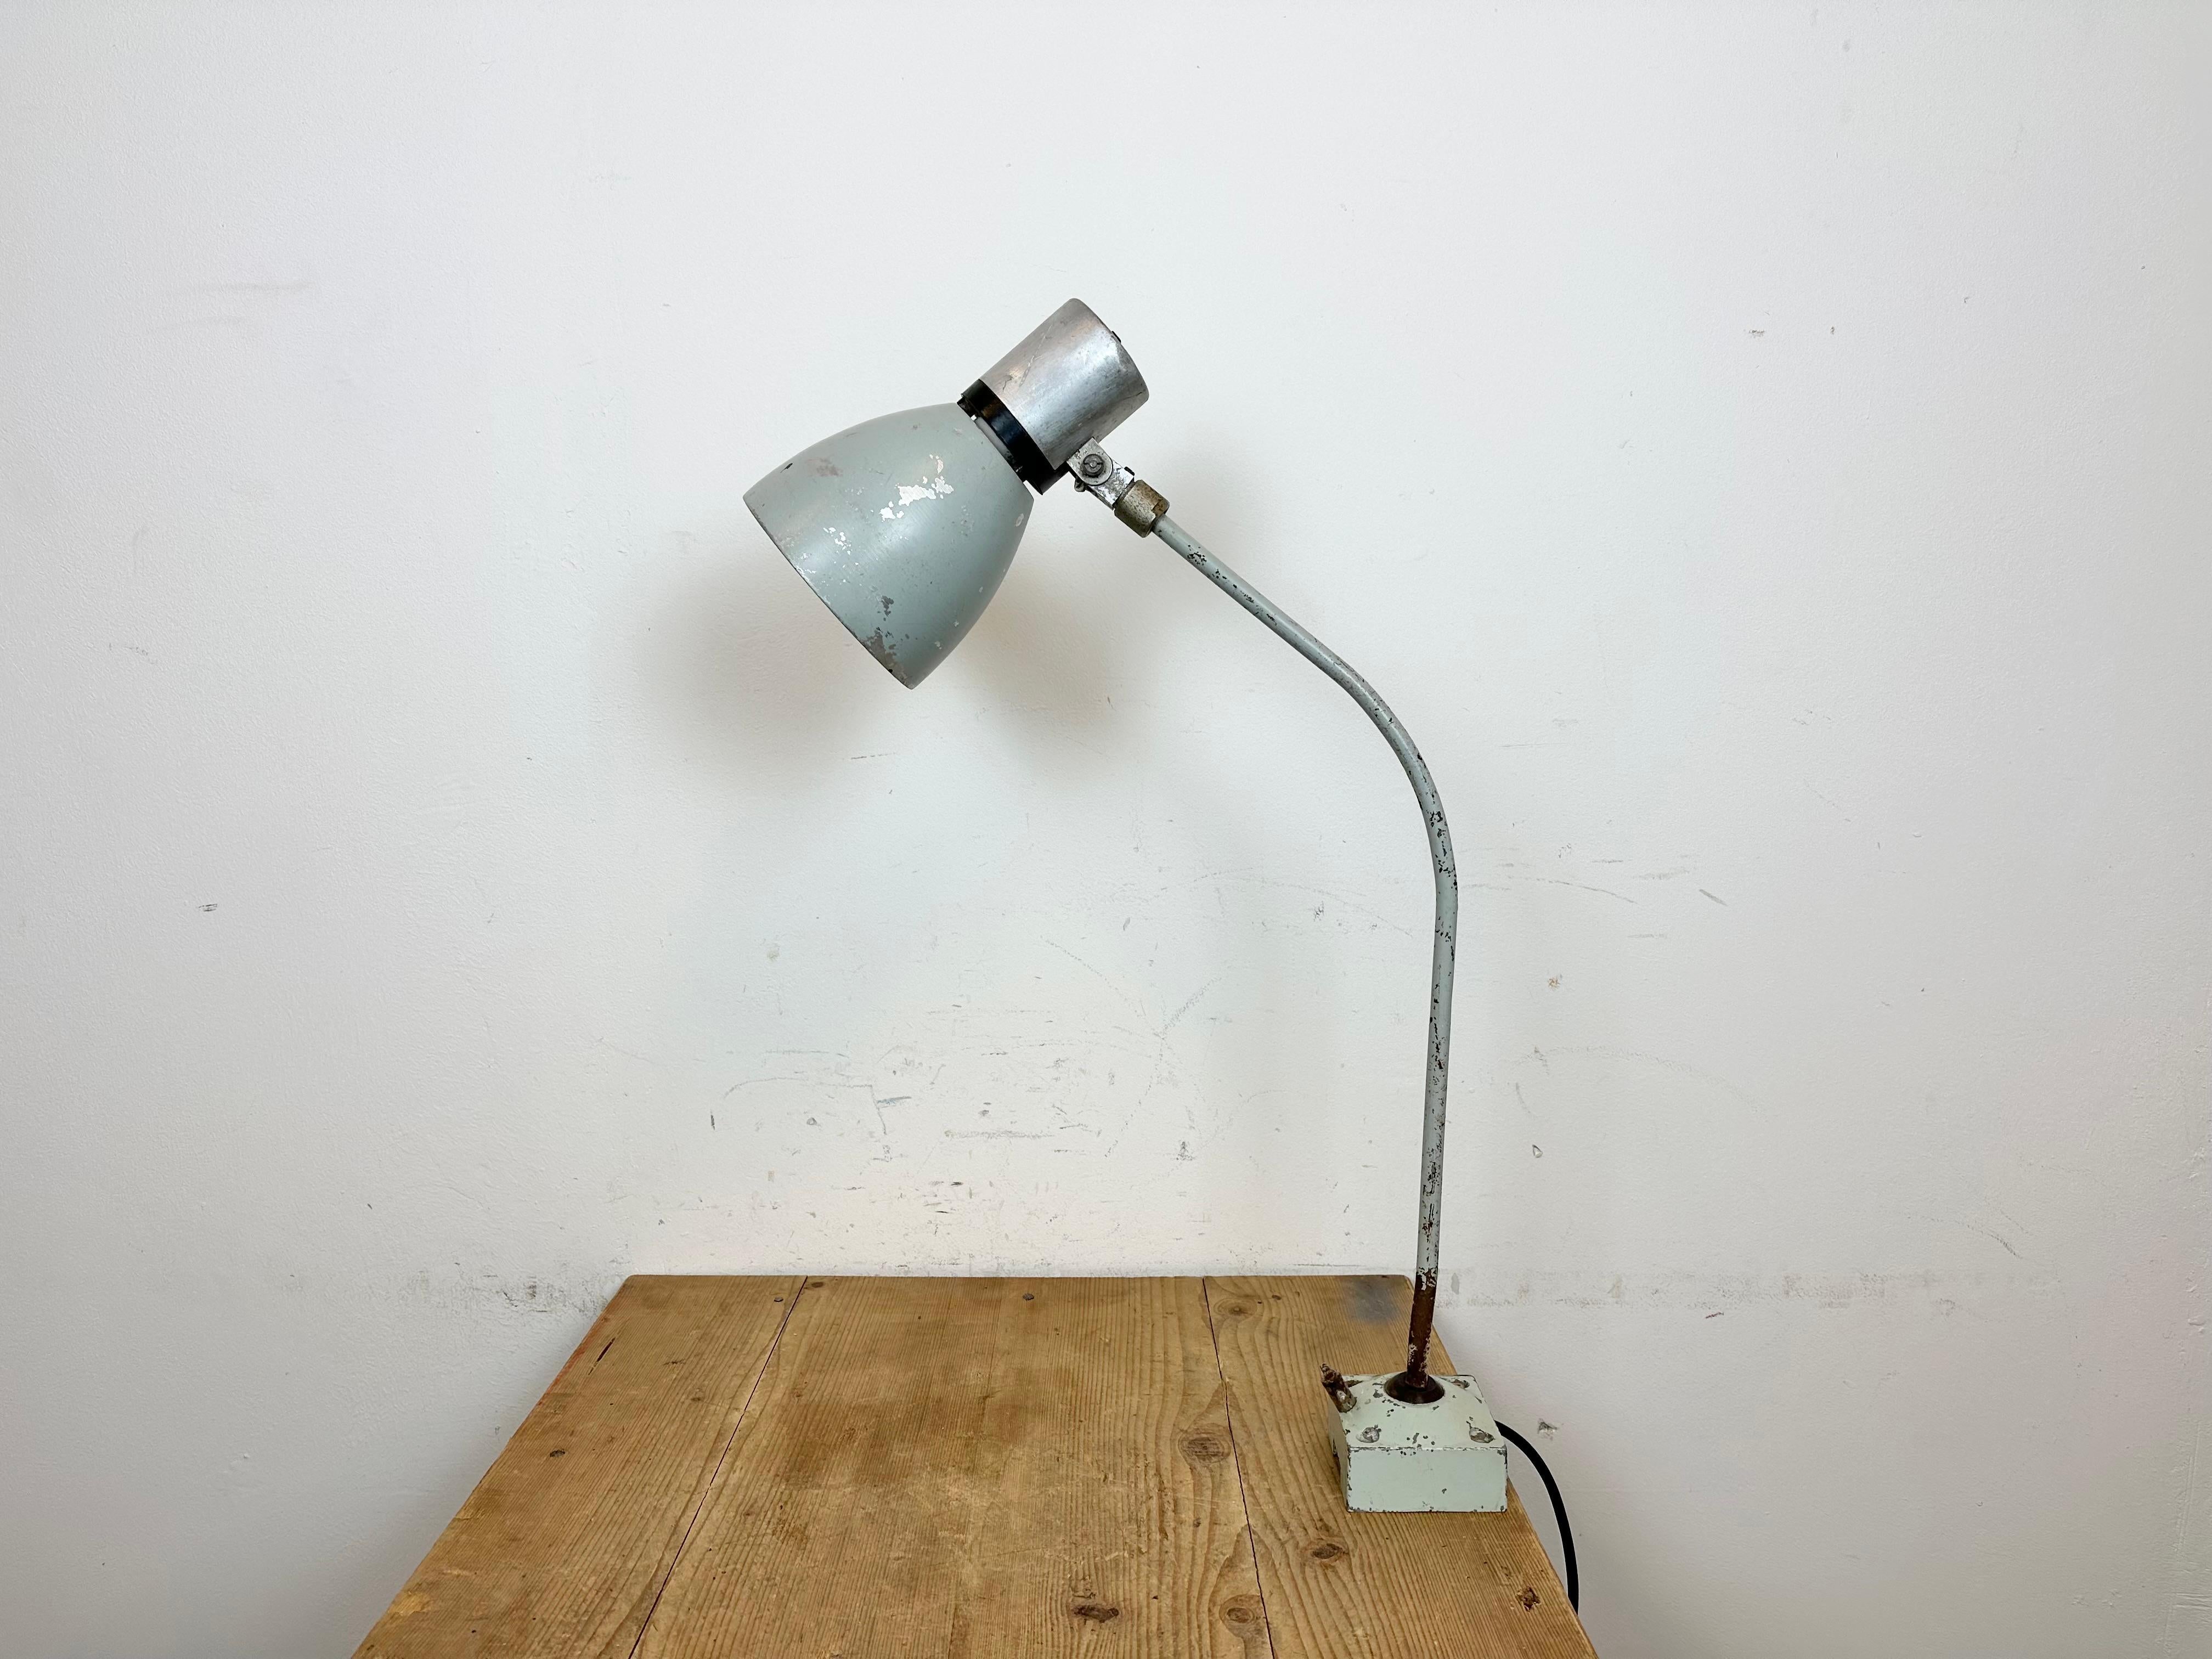 Industrielle Werkstatt-Tischlampe, hergestellt von Elektrosvit in der ehemaligen Tschechoslowakei in den 1970er Jahren. Sie hat einen Fuß und einen Arm aus Eisen und einen Schirm aus Aluminium mit einem Originalschalter auf der Oberseite. Die